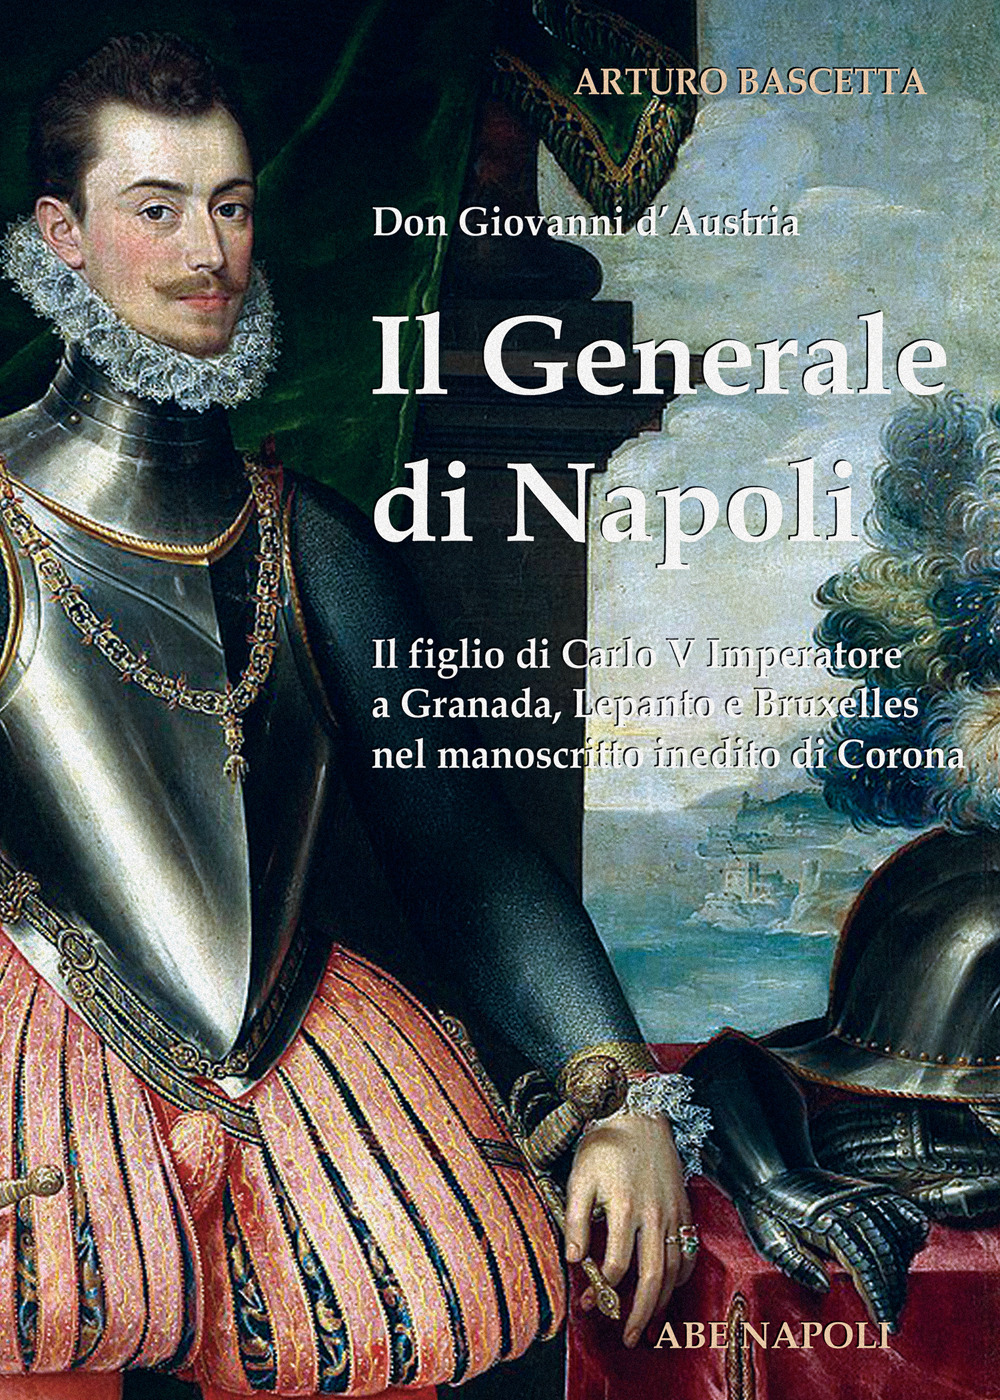 Il generale di Napoli: Don Giovanni d'Austria, il figlio di Carlo V Imperatore a Granada, Lepanto e Bruxelles nel manoscritto inedito di Corona